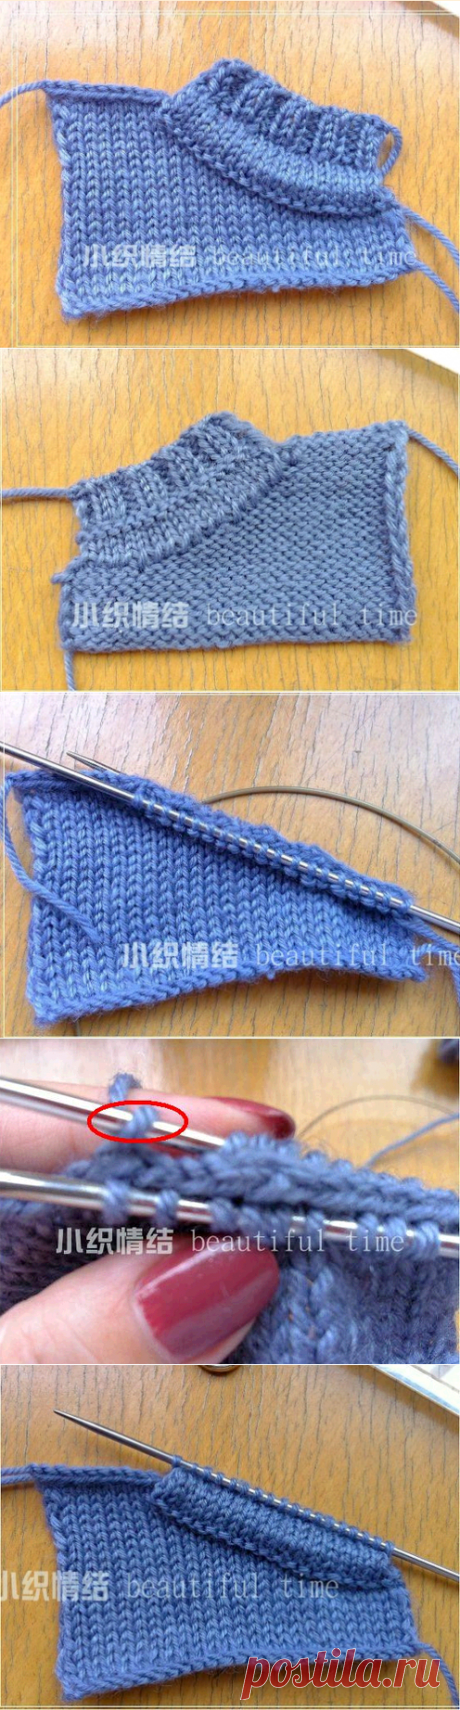 Отделка горловины вязаного спицами джемпера,свитера,подробно по фото